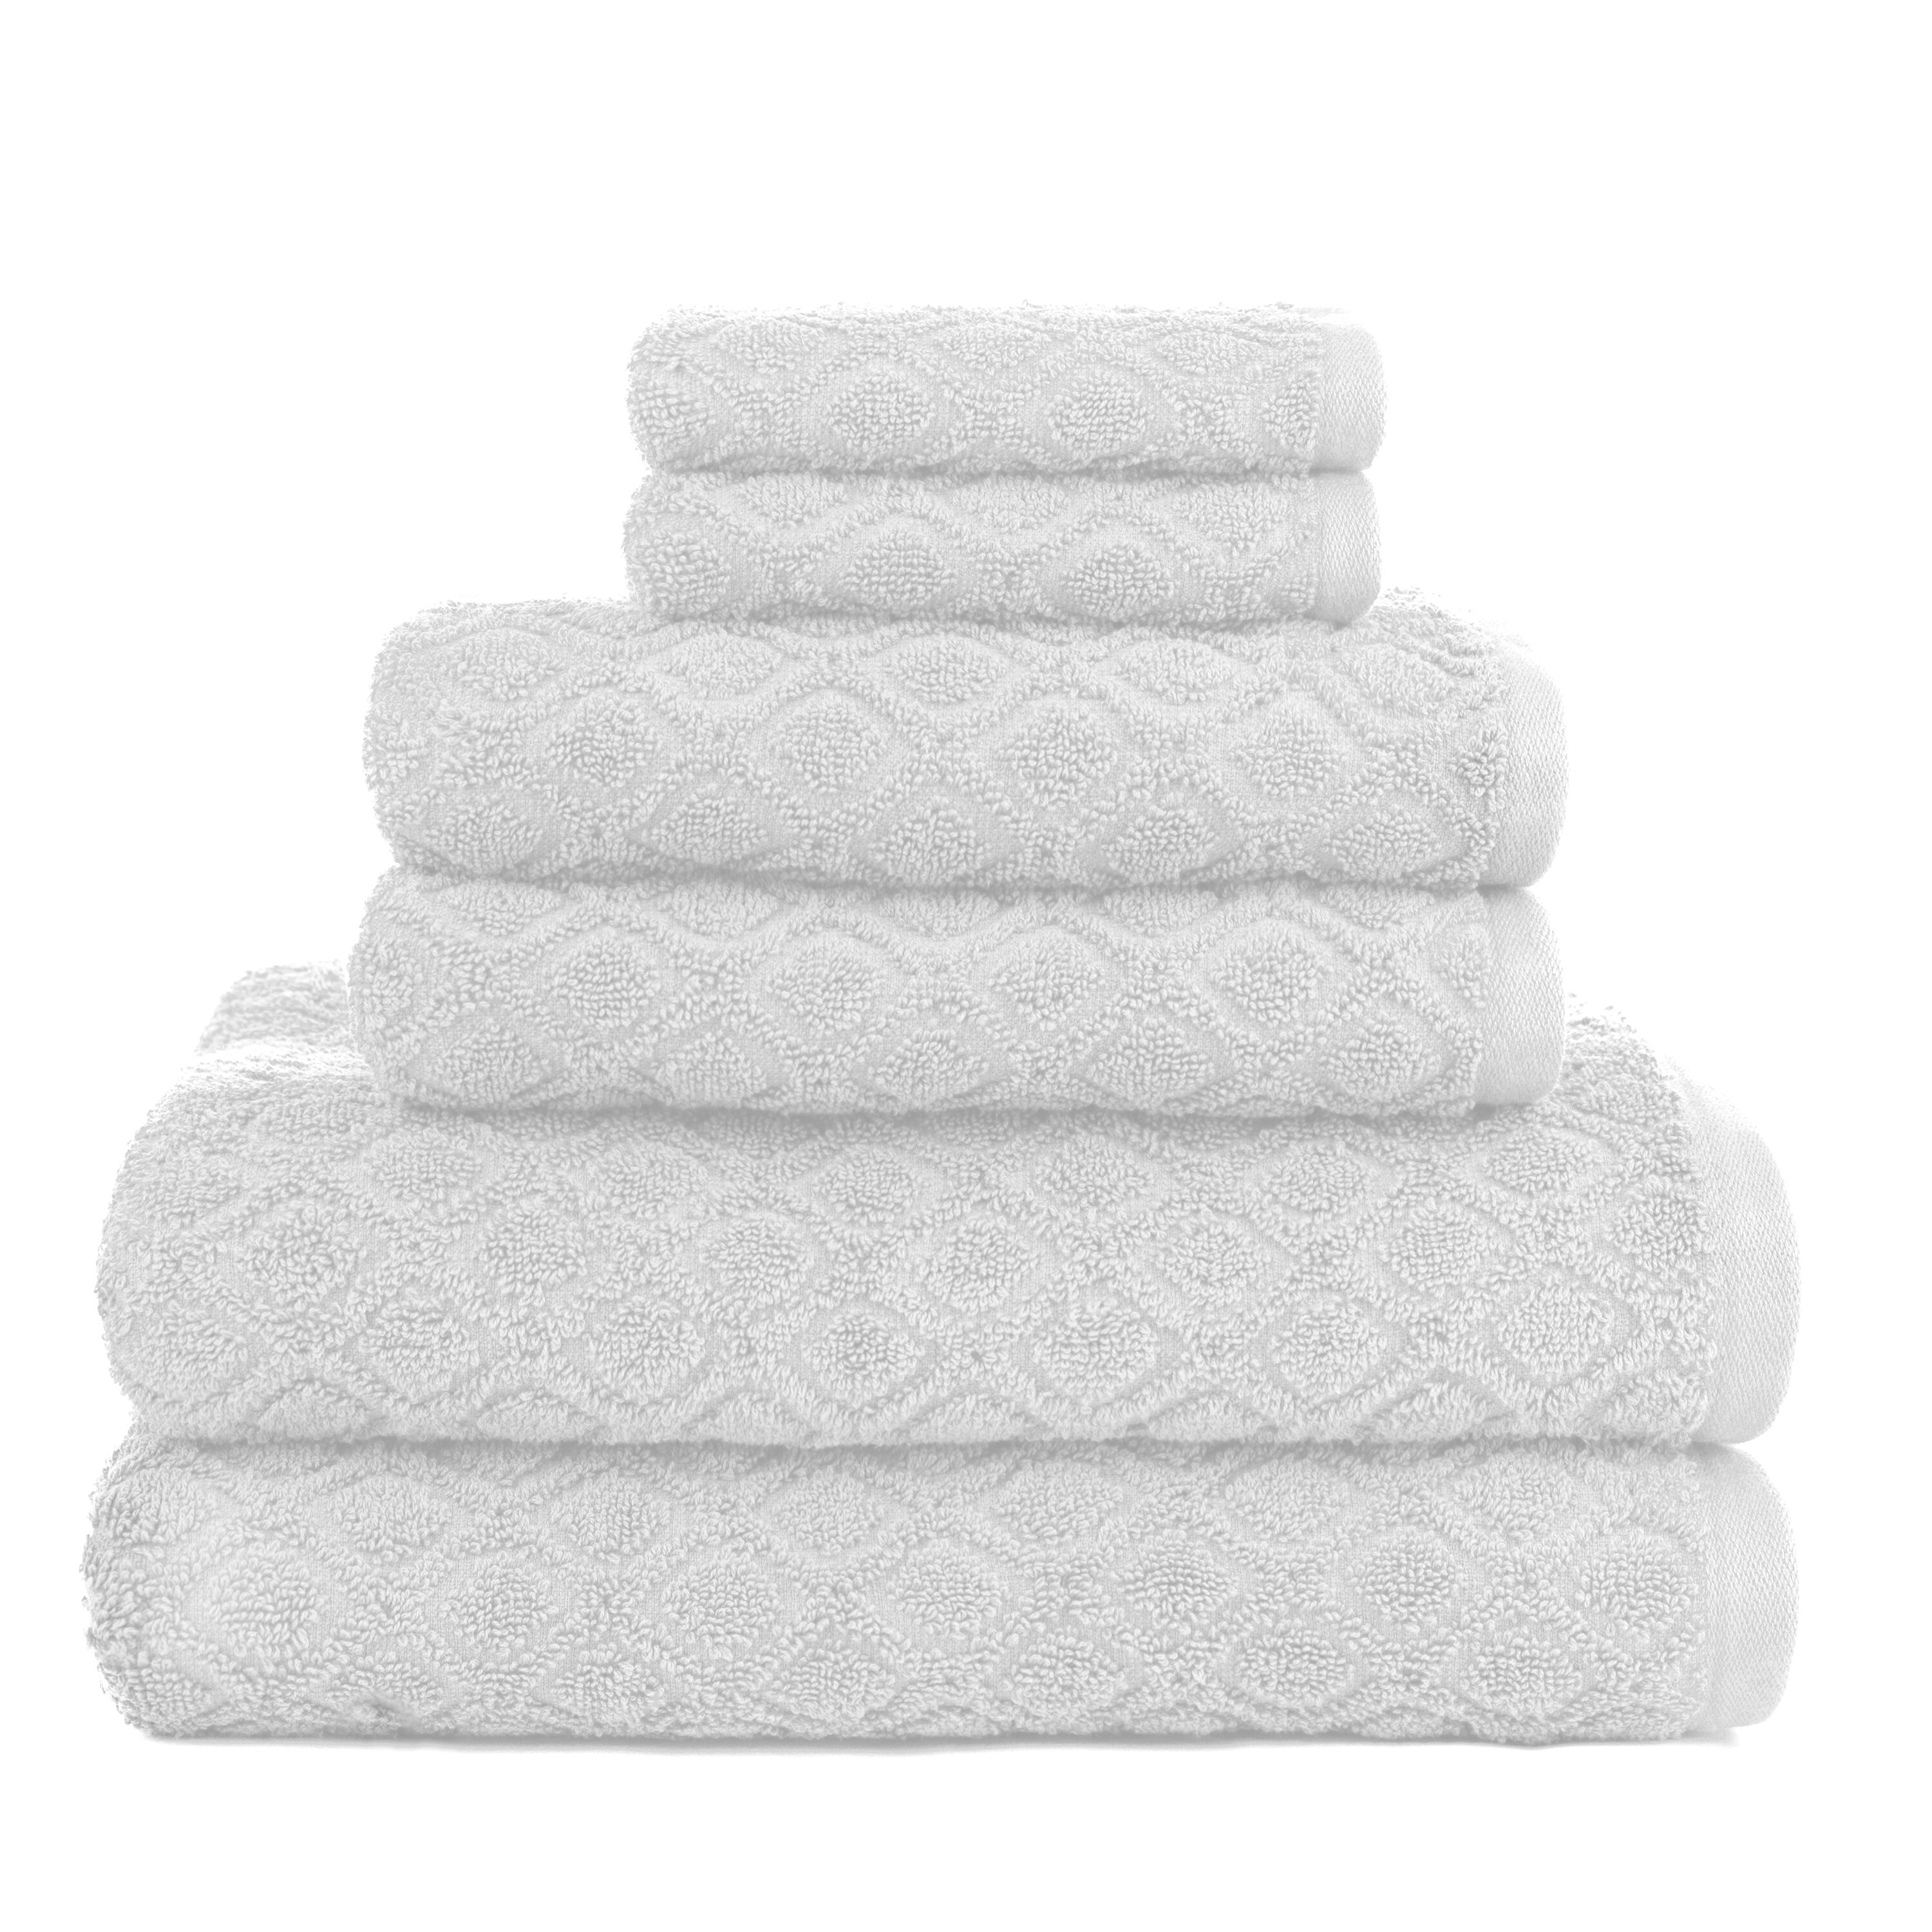 6 Piece 100% Cotton Bath Towel Set 